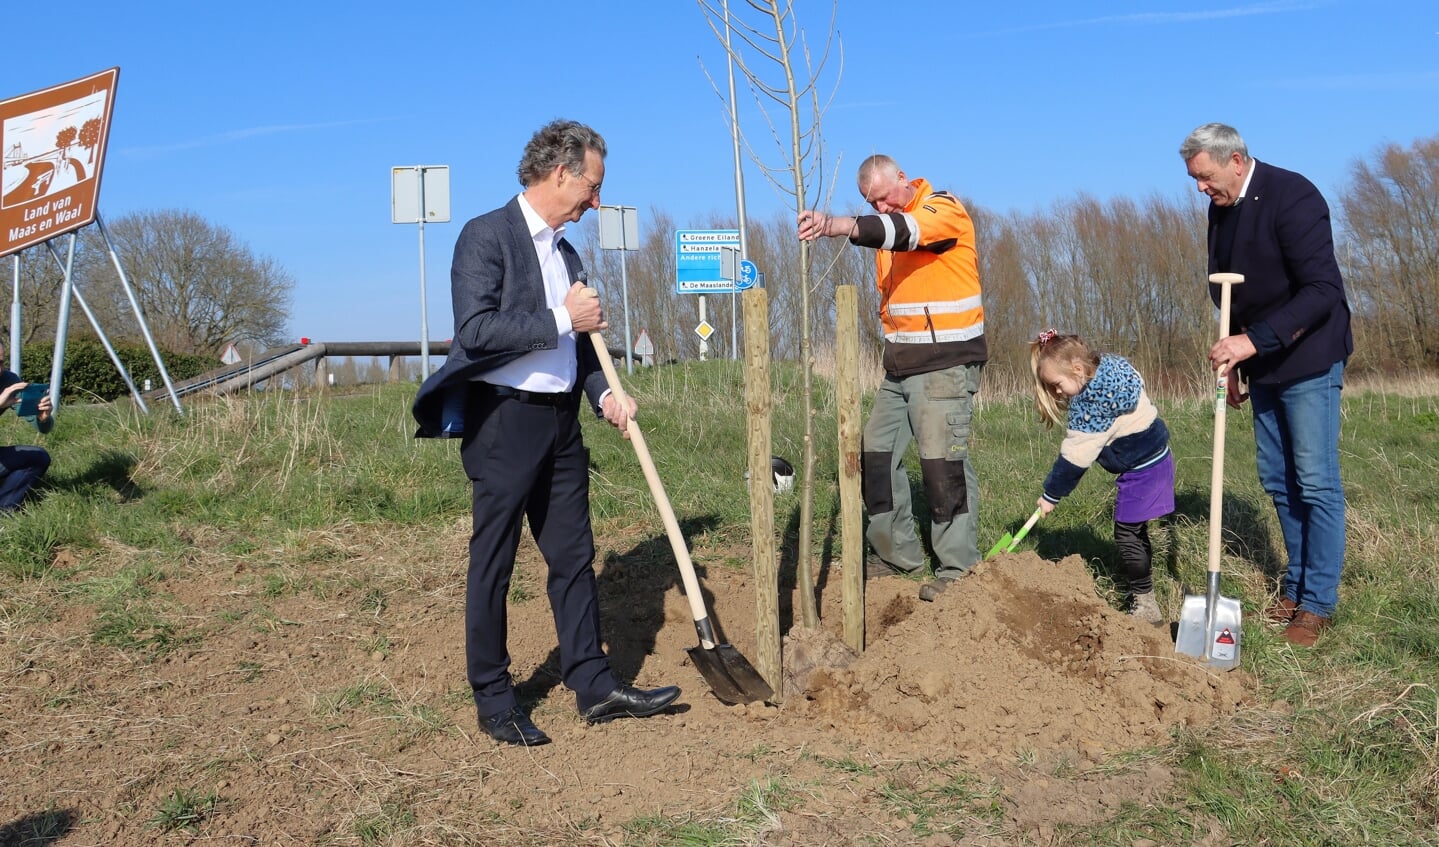 Vrijdagmiddag heeft wethouder René Cruijsen samen met zijn kleindochter Kate een nieuwe bakenboom geplant aan de veerstoep te Appeltern. Wethouder Johan van der Schoot uit de gemeente Oss hielp een handje mee. 